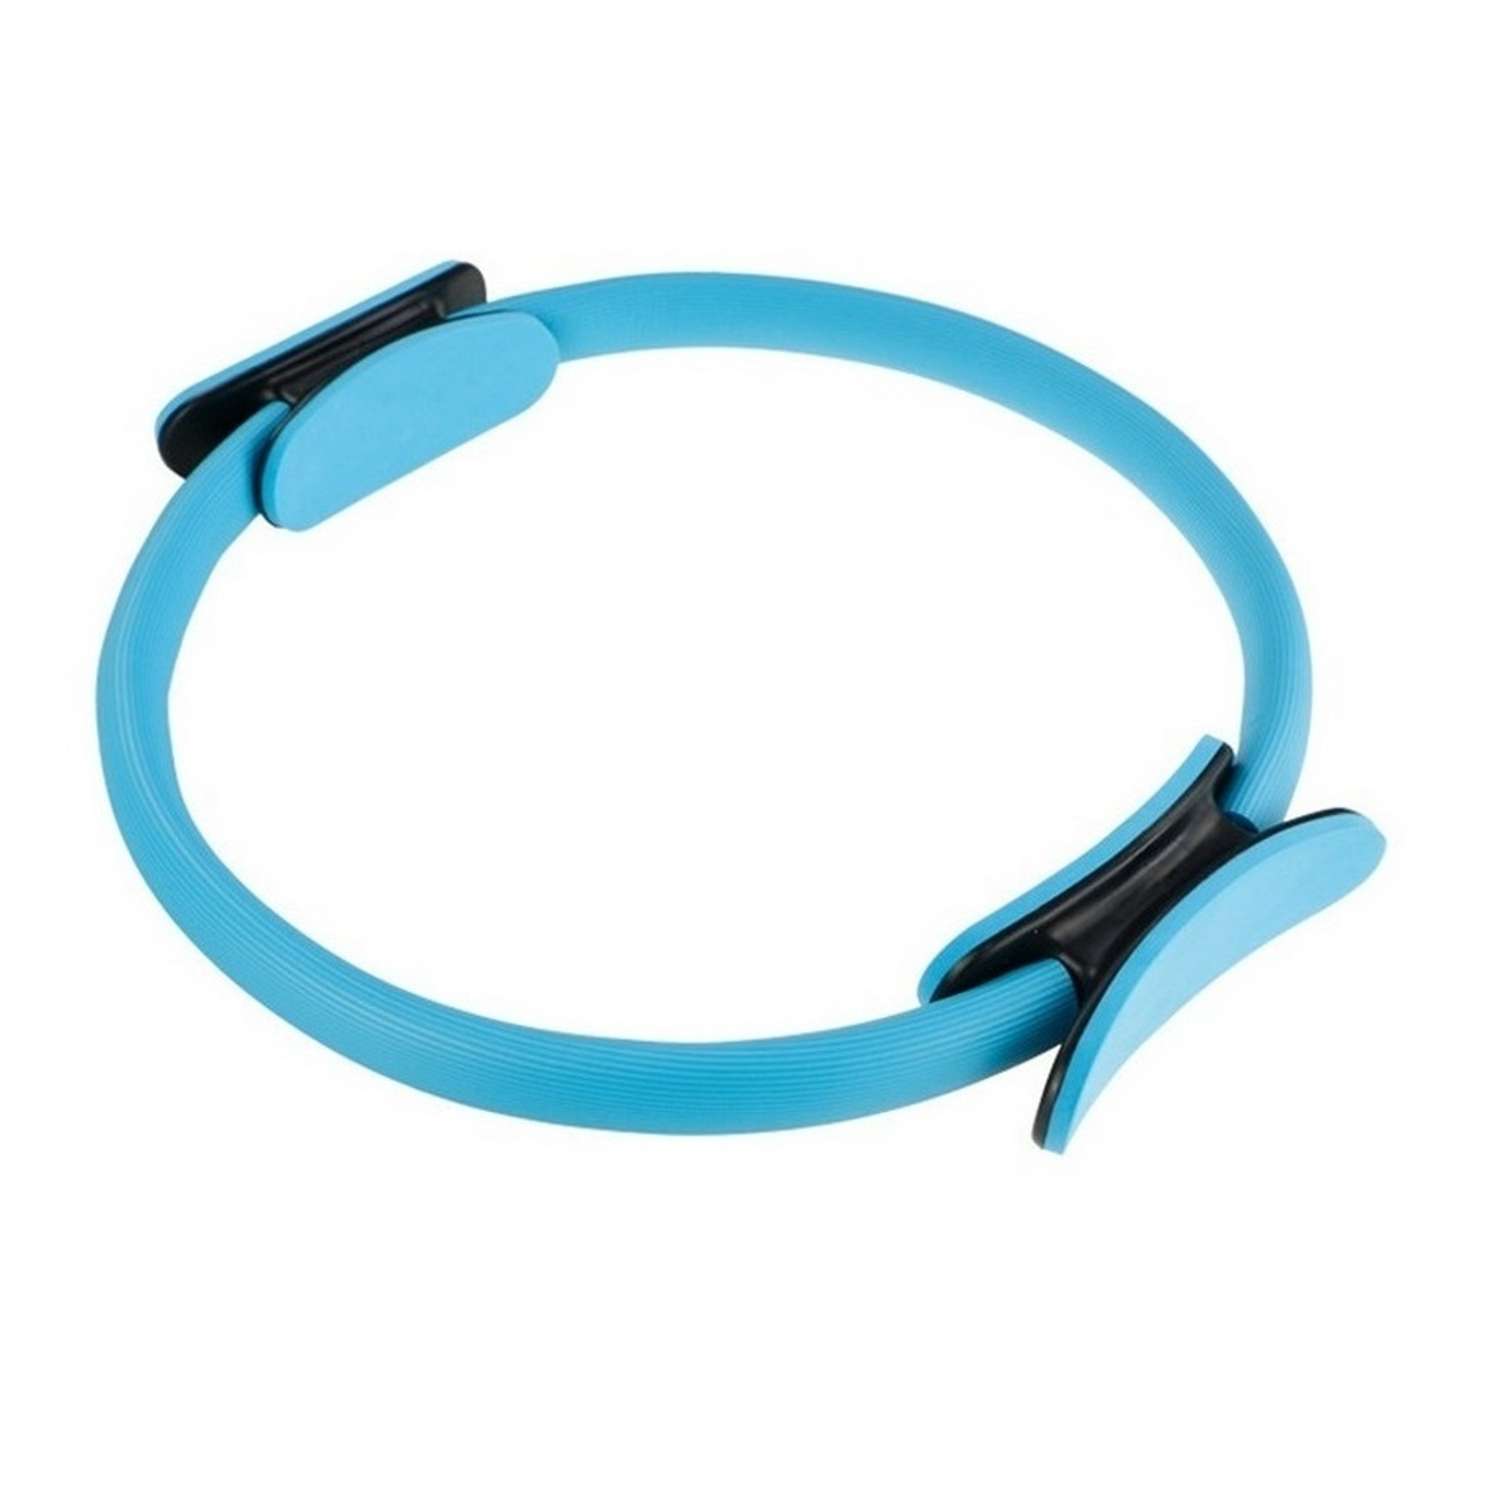 Изотоническое кольцо STRONG BODY обруч для йоги и пилатес d 38 см голубое - фото 2